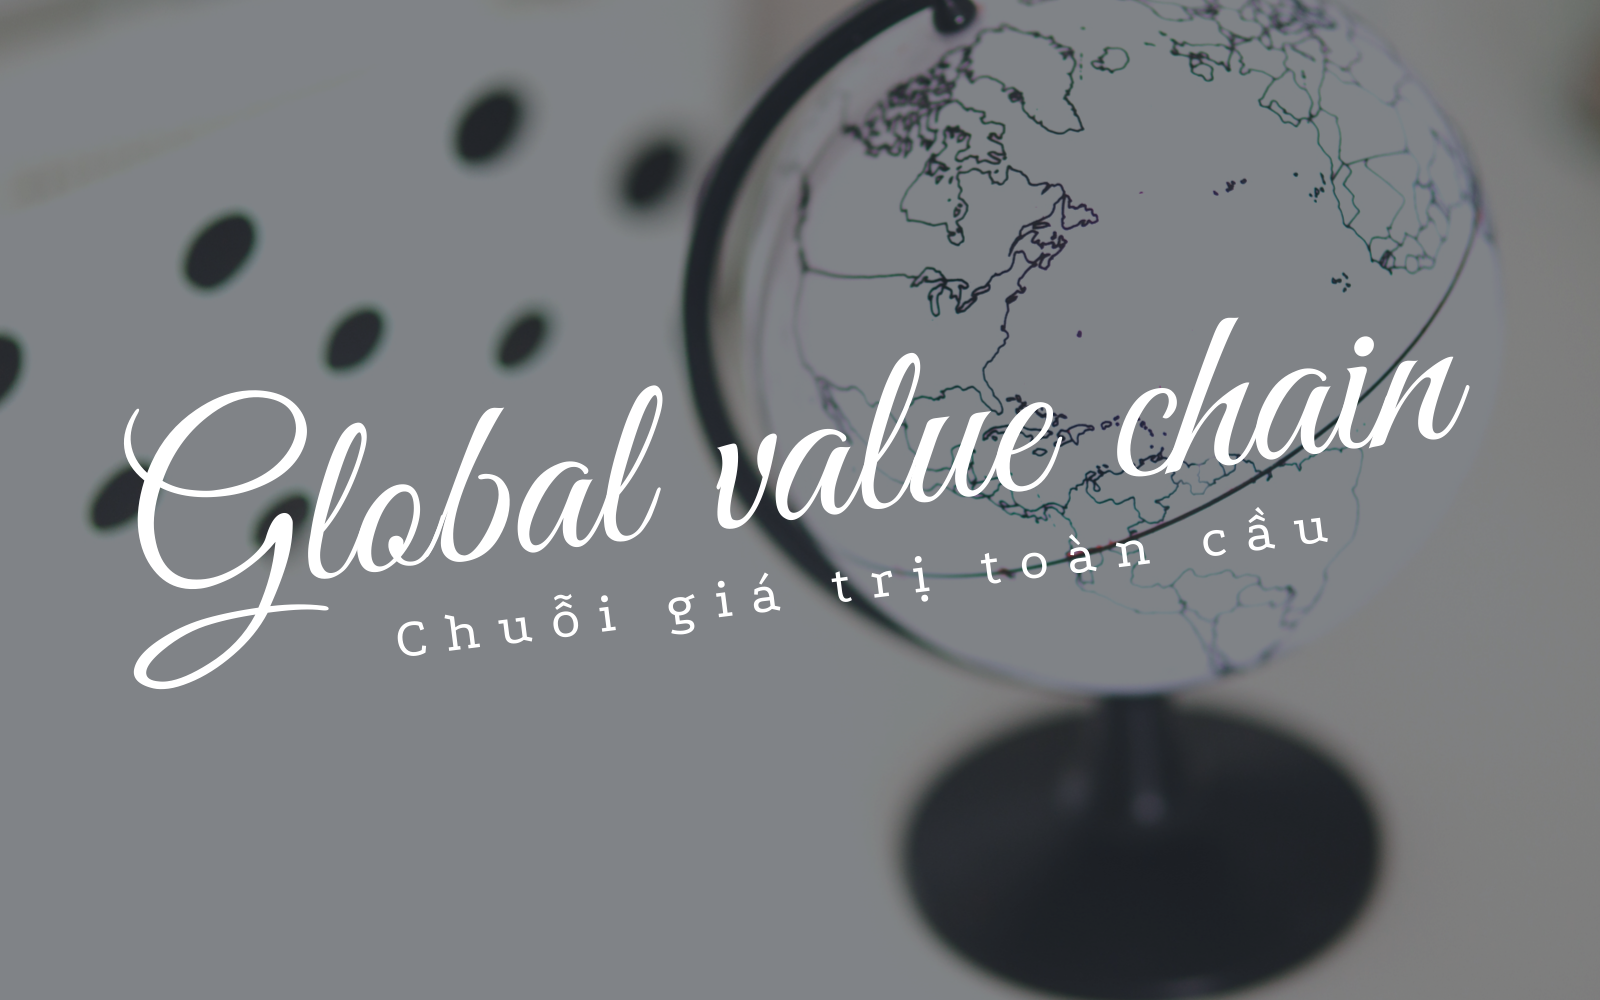 Chuỗi giá trị toàn cầu (Global Value Chain) là gì? Tầm quan trọng đối với xã hội